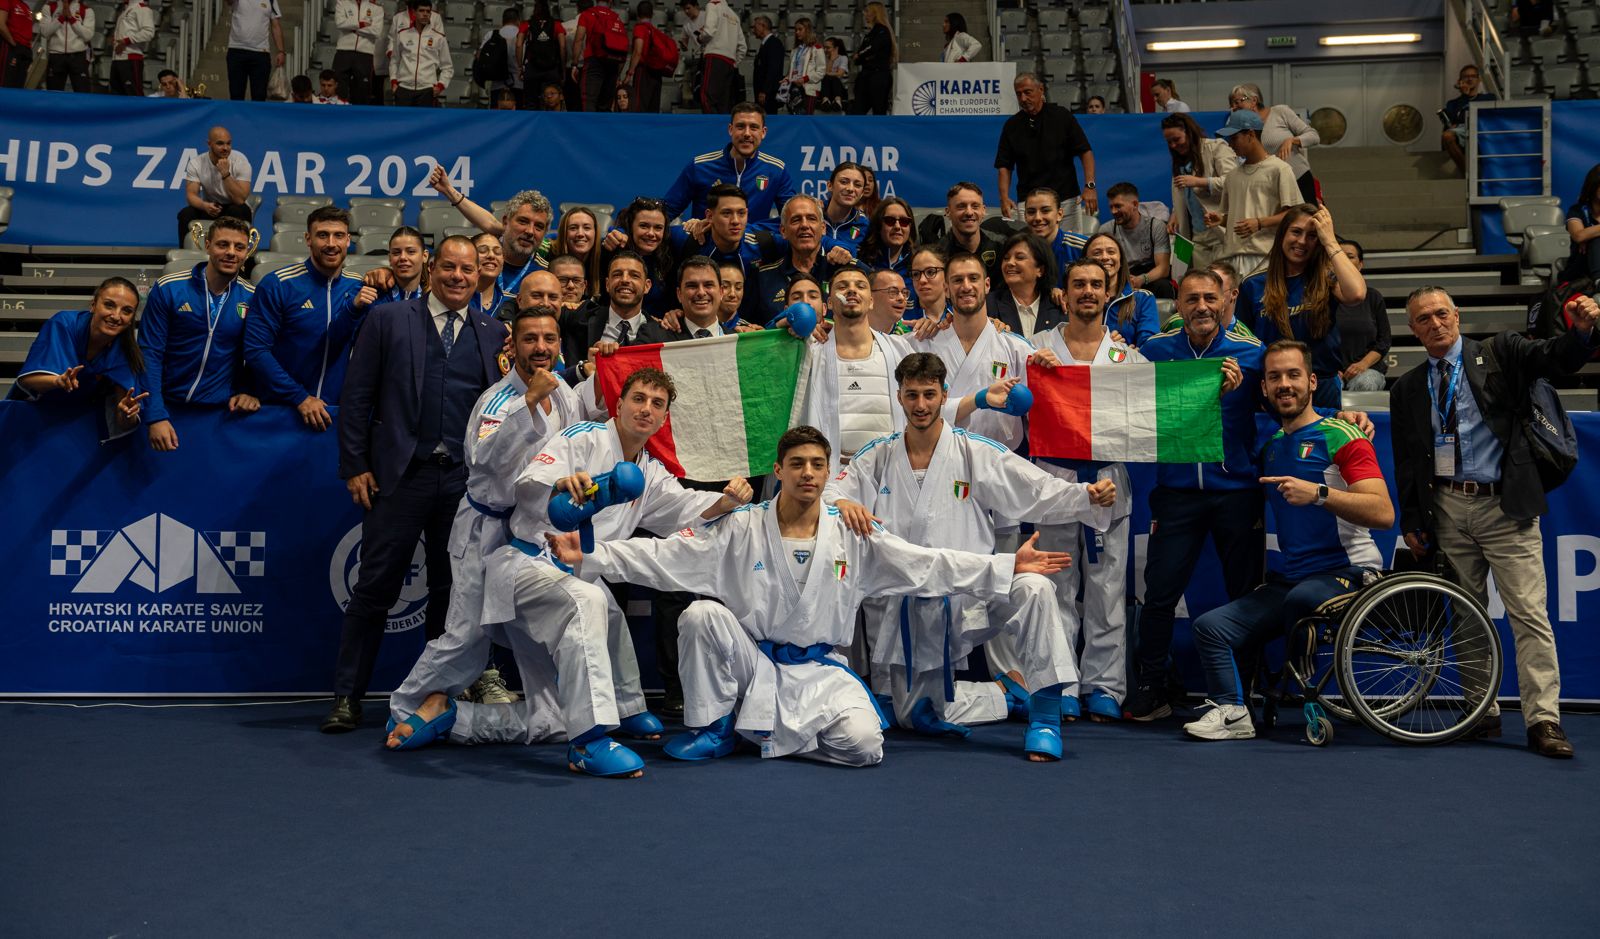 Europei di Zara: l'Italia cala il tris nella giornata finale e chiude a quota 13 medaglie